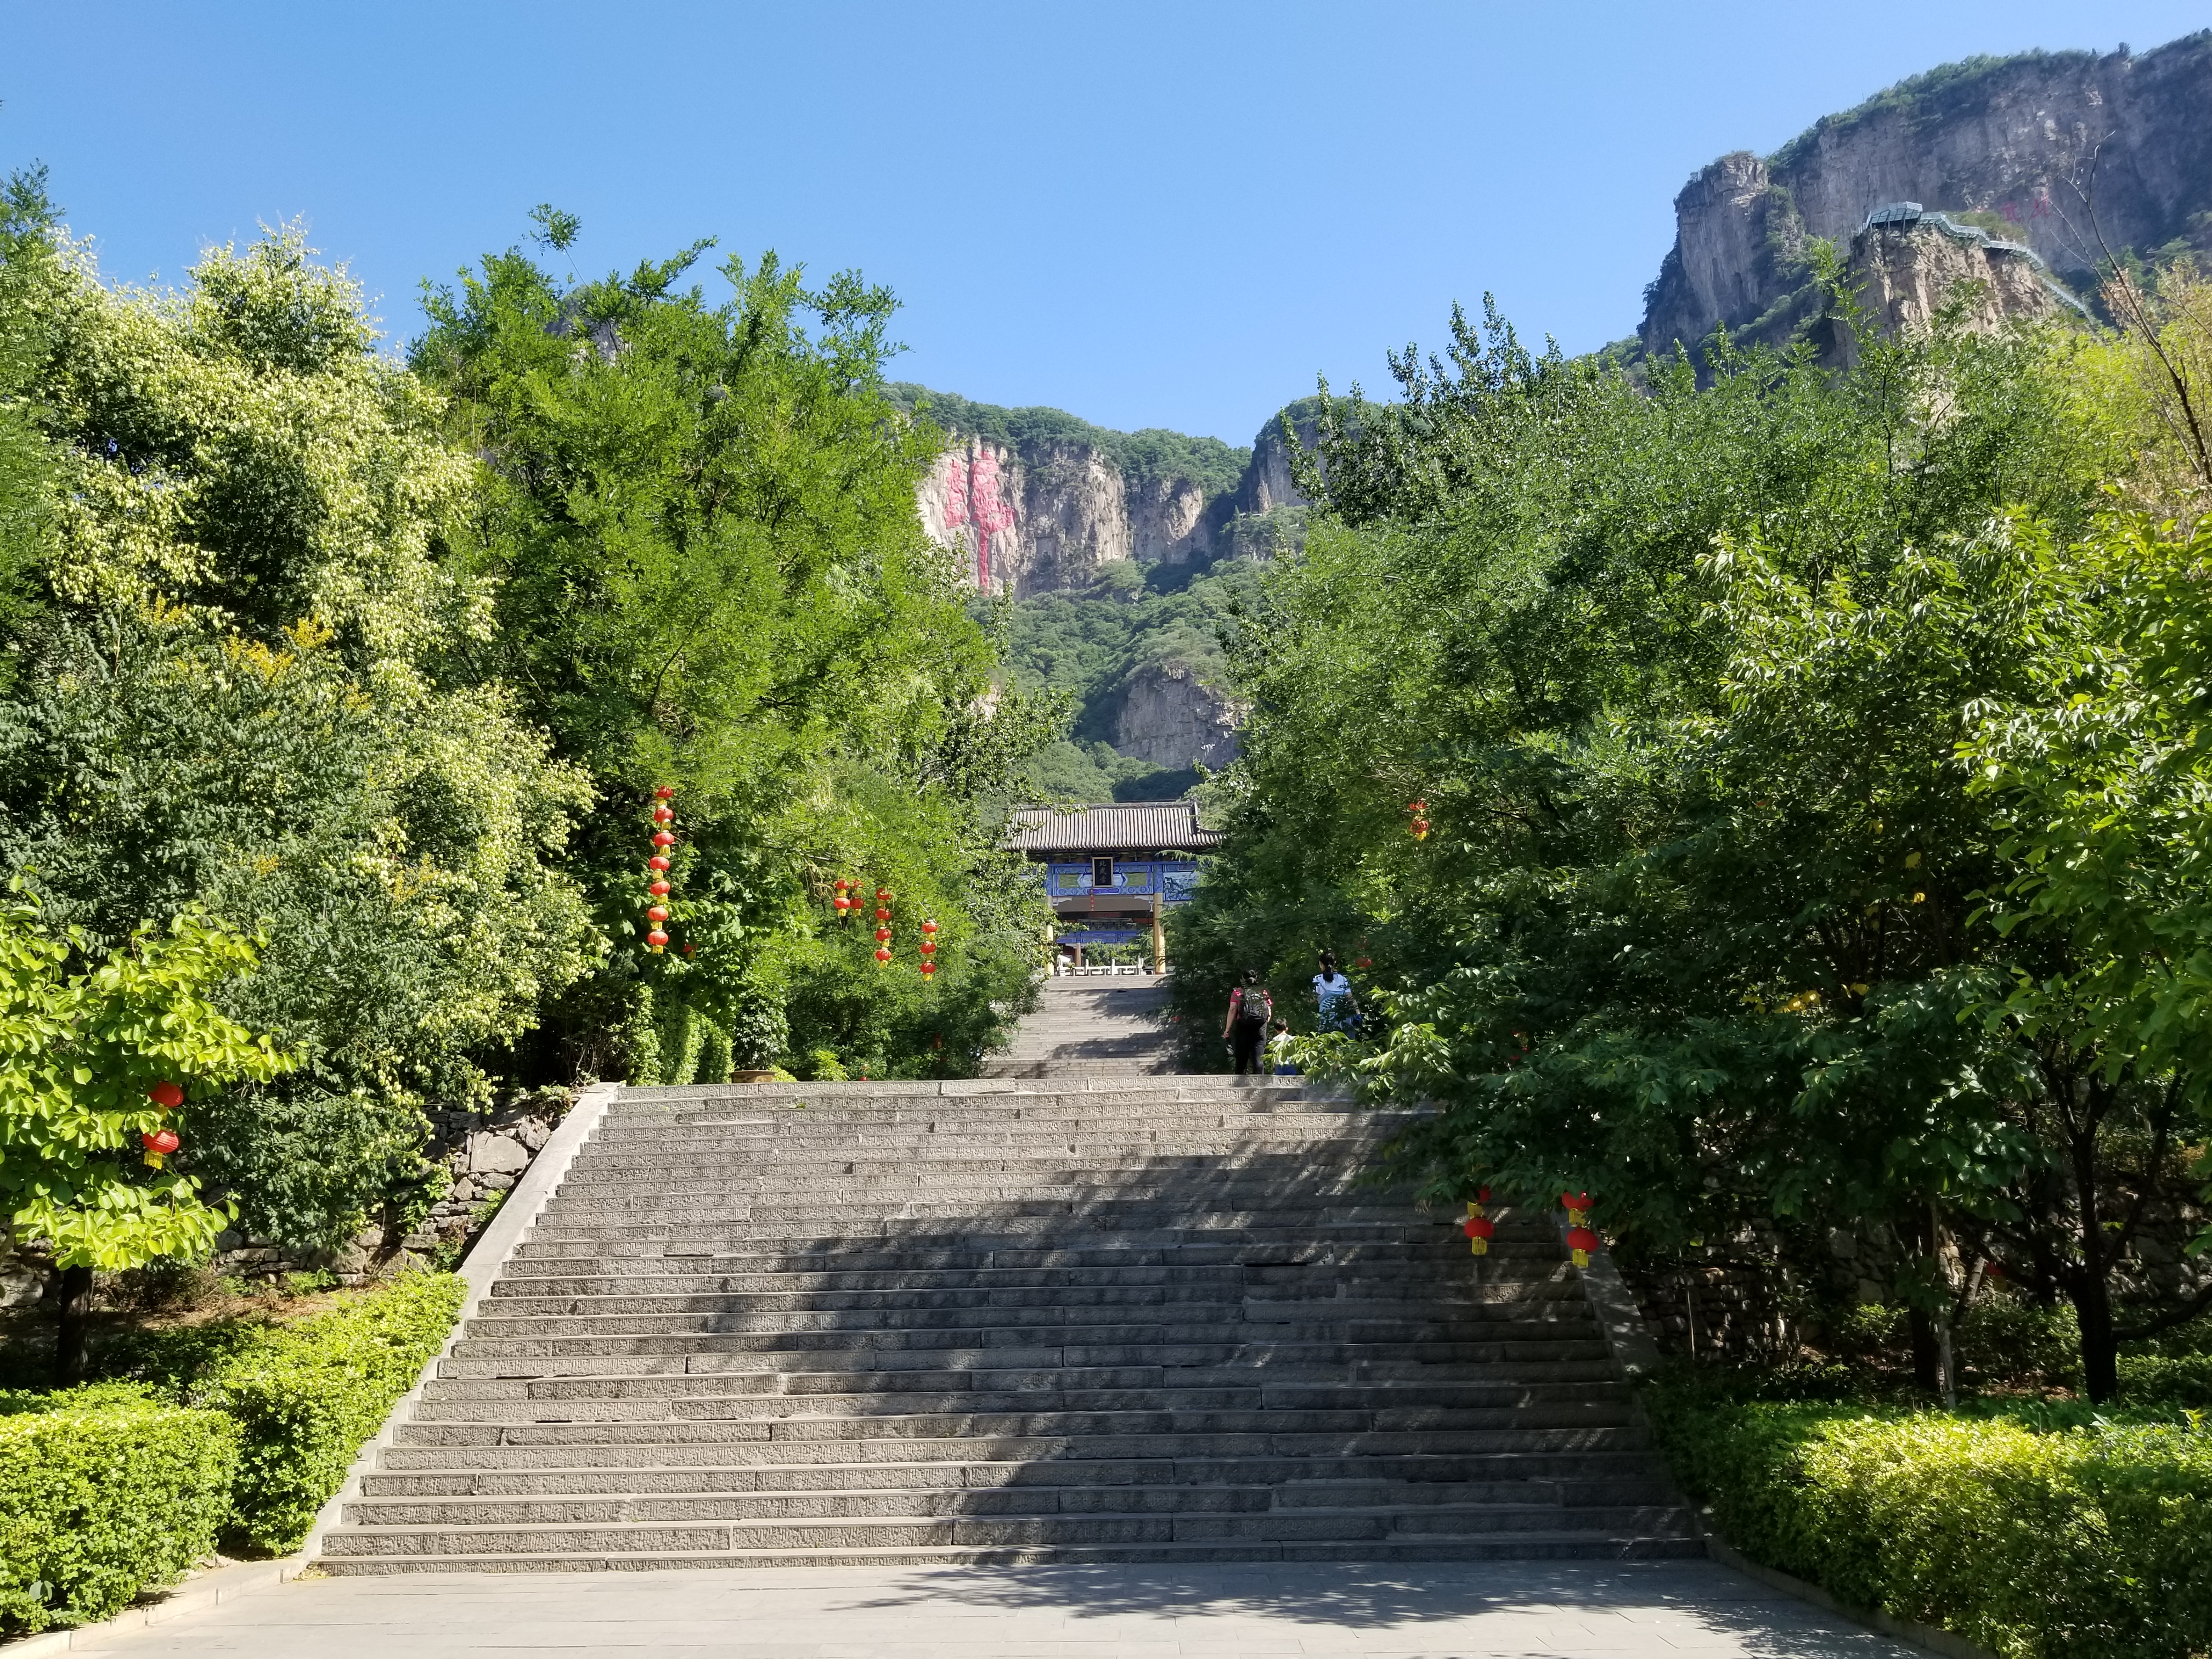 天桂山风景区图片